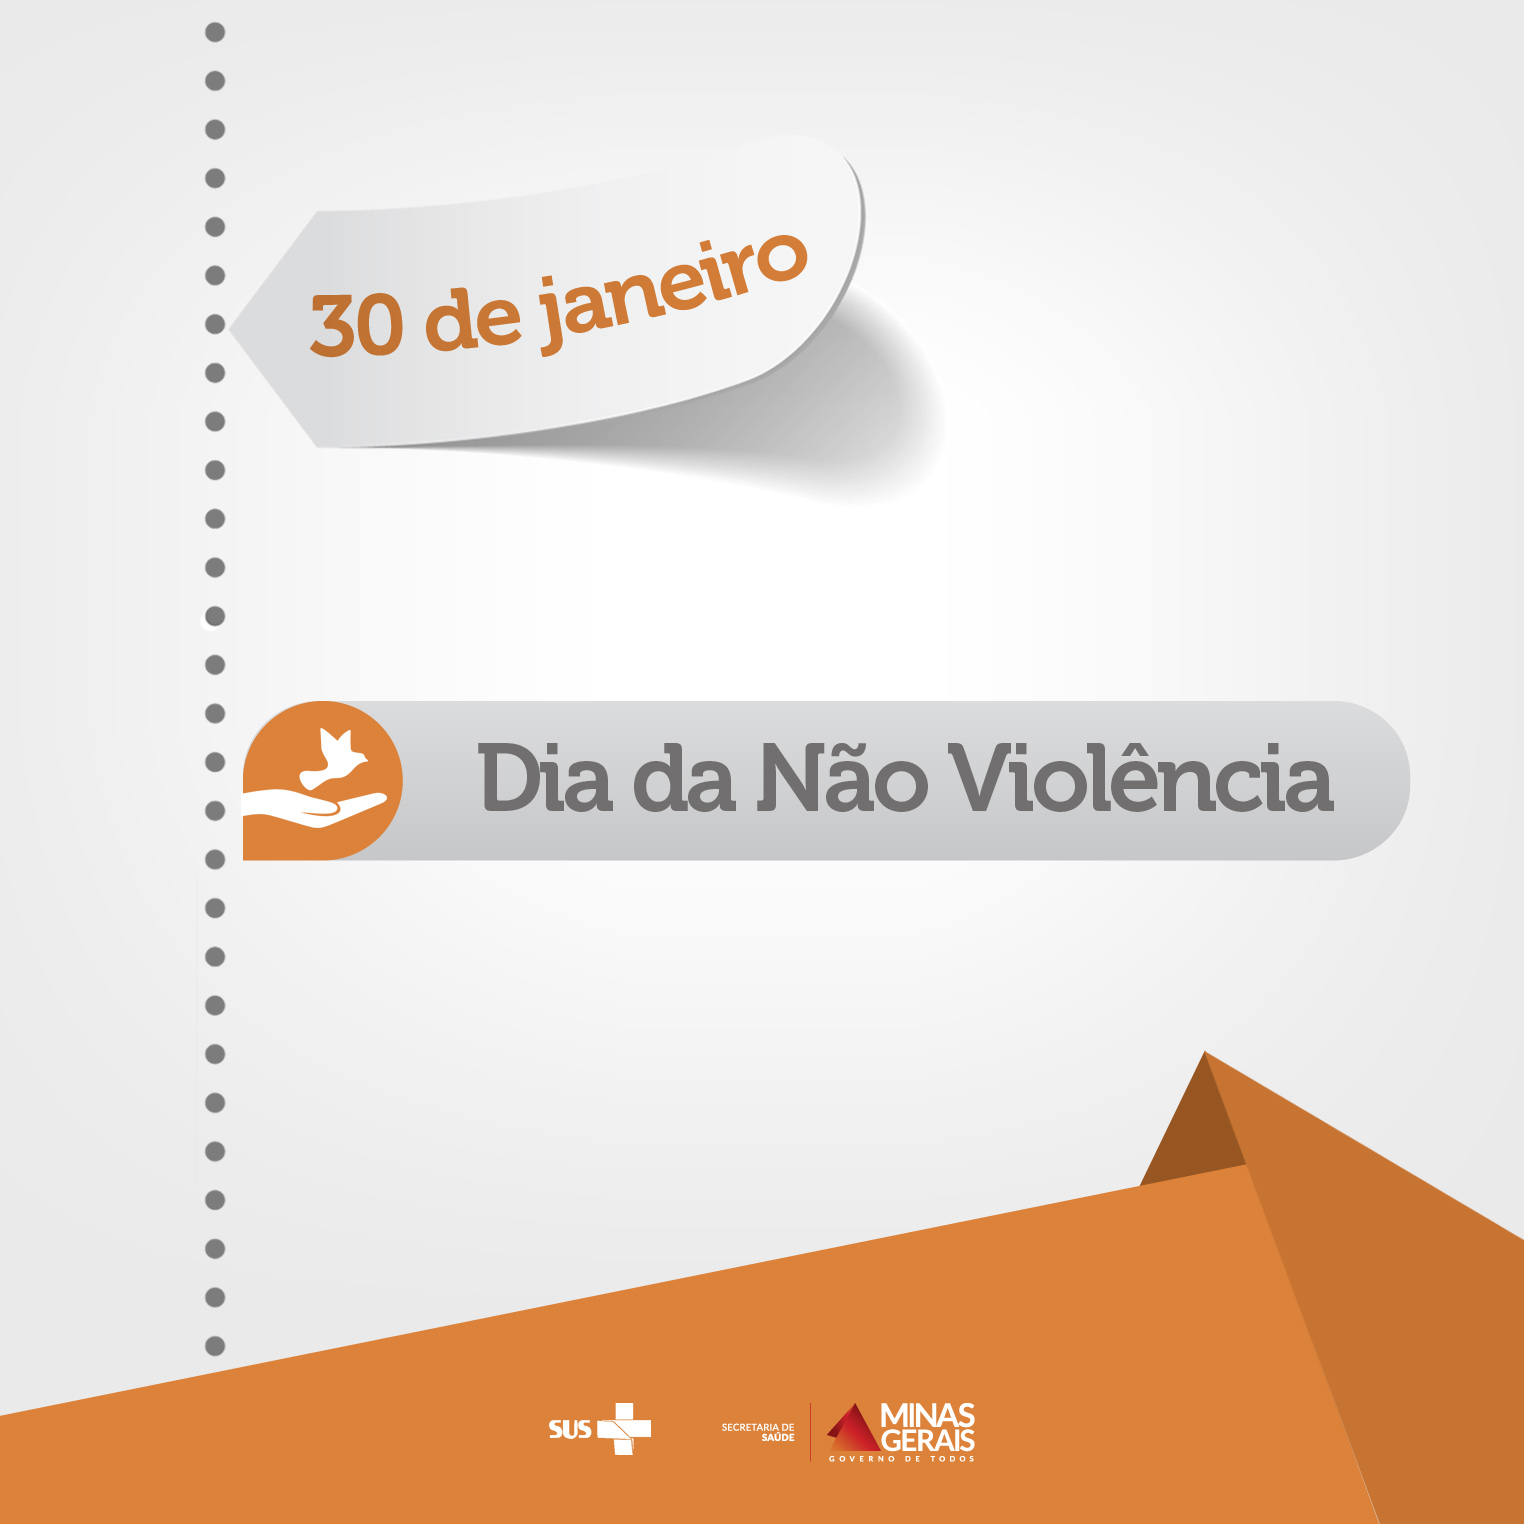 30-01 Dia da Não Violência (Cultura da Paz)